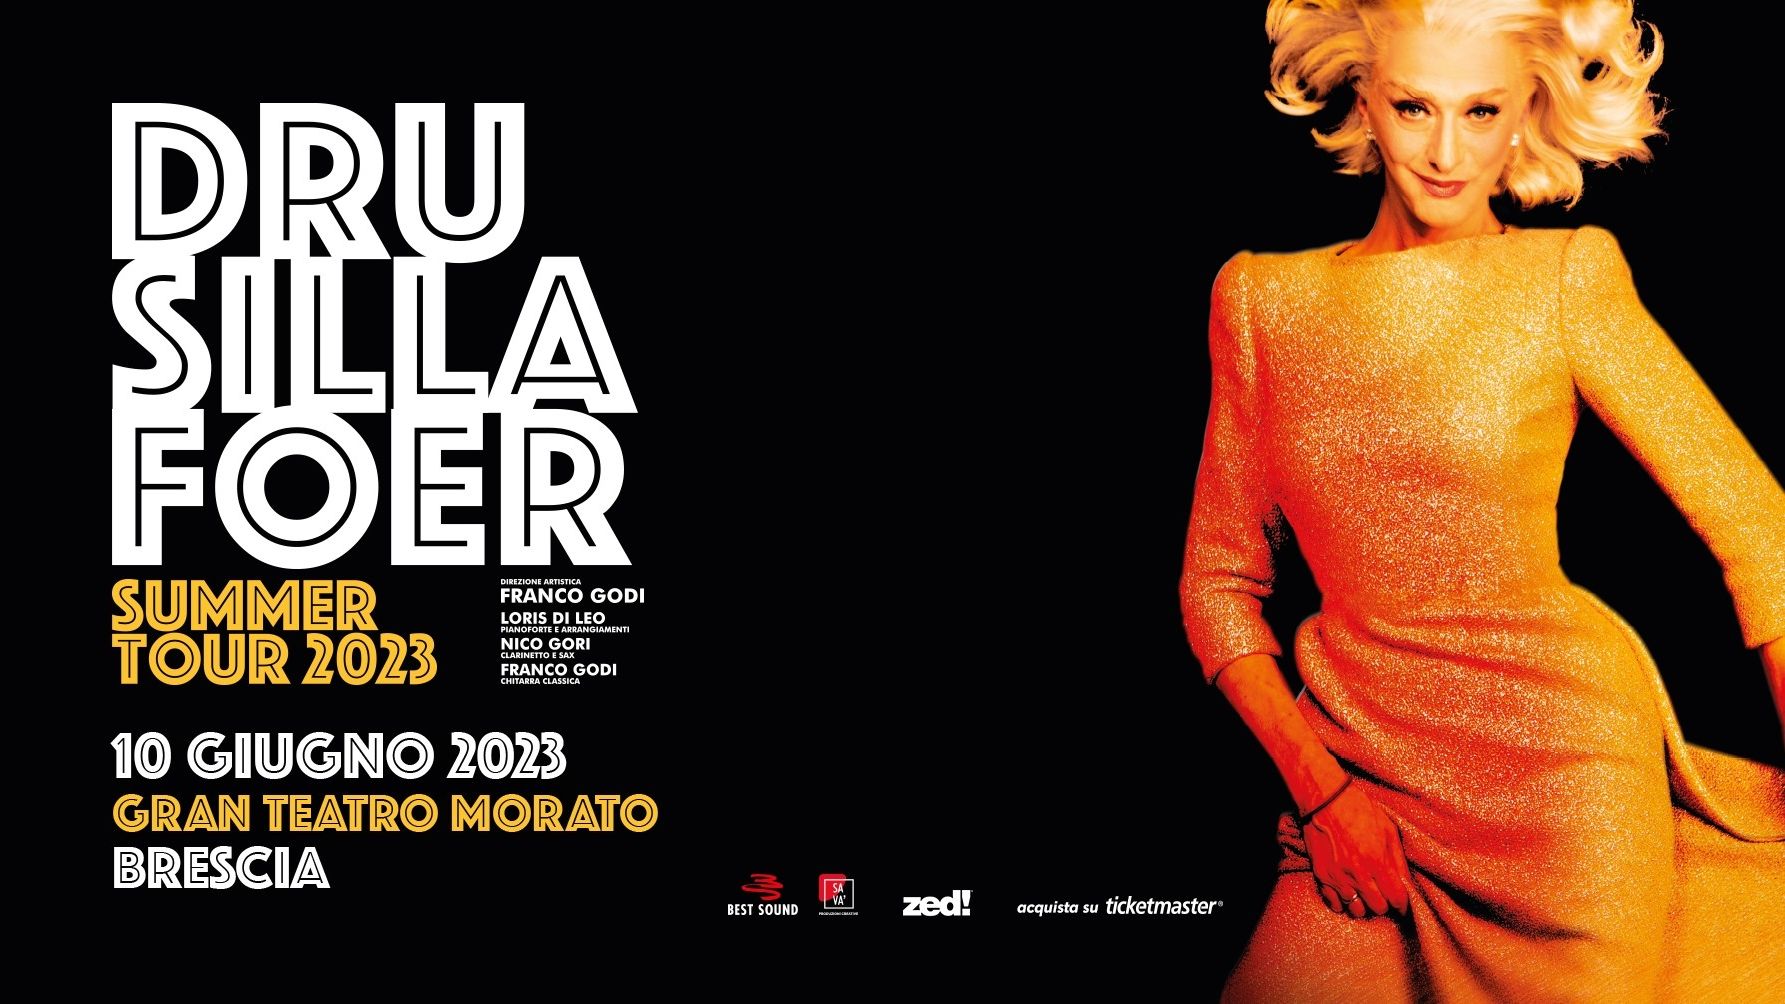 Drusilla Foer - "Summer Tour 2023"